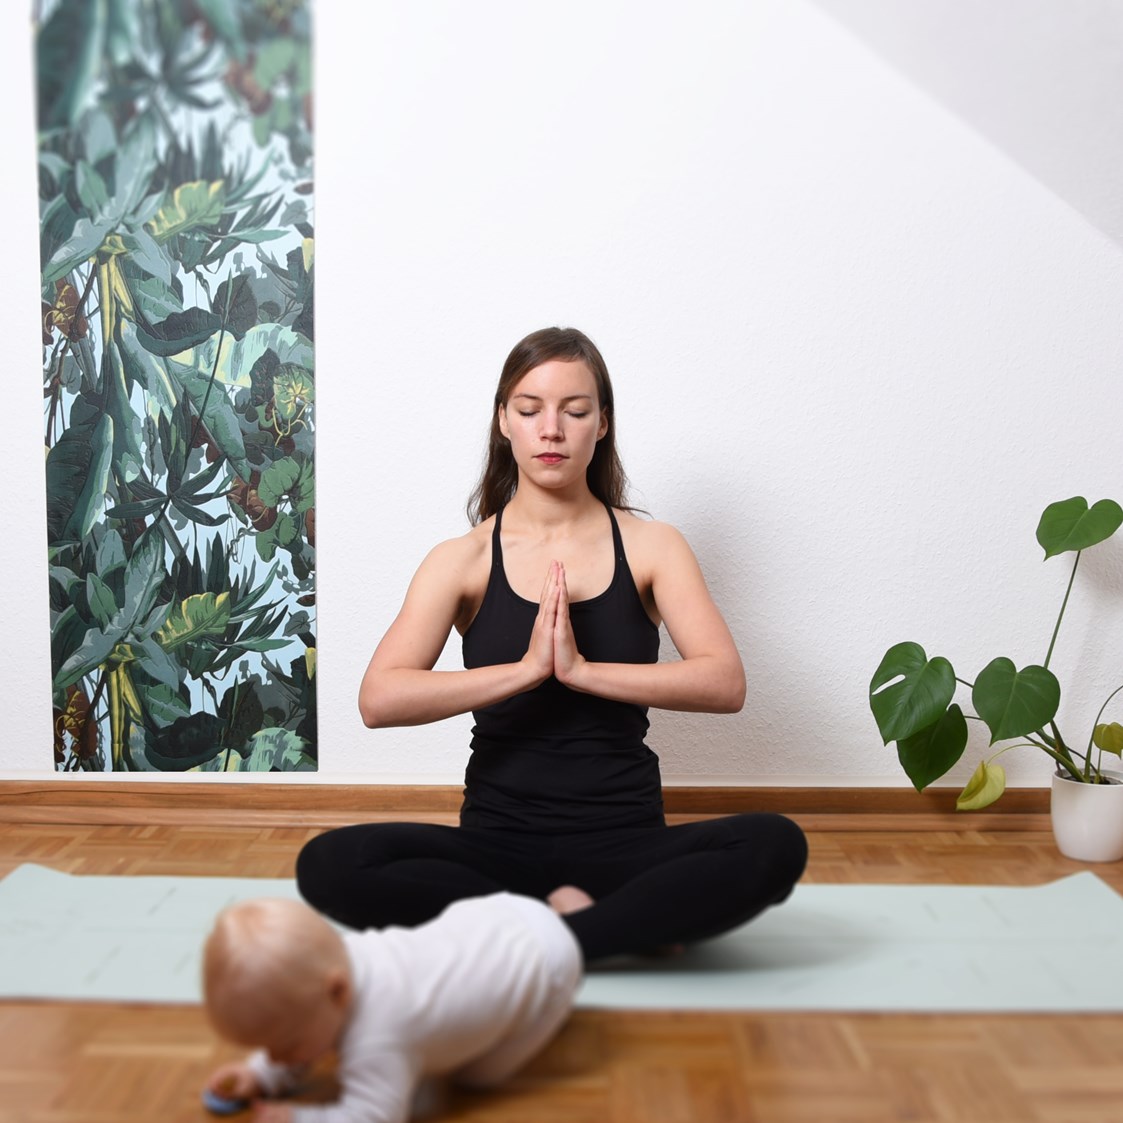 Yoga: Rückbildungs-Yoga Hannover List